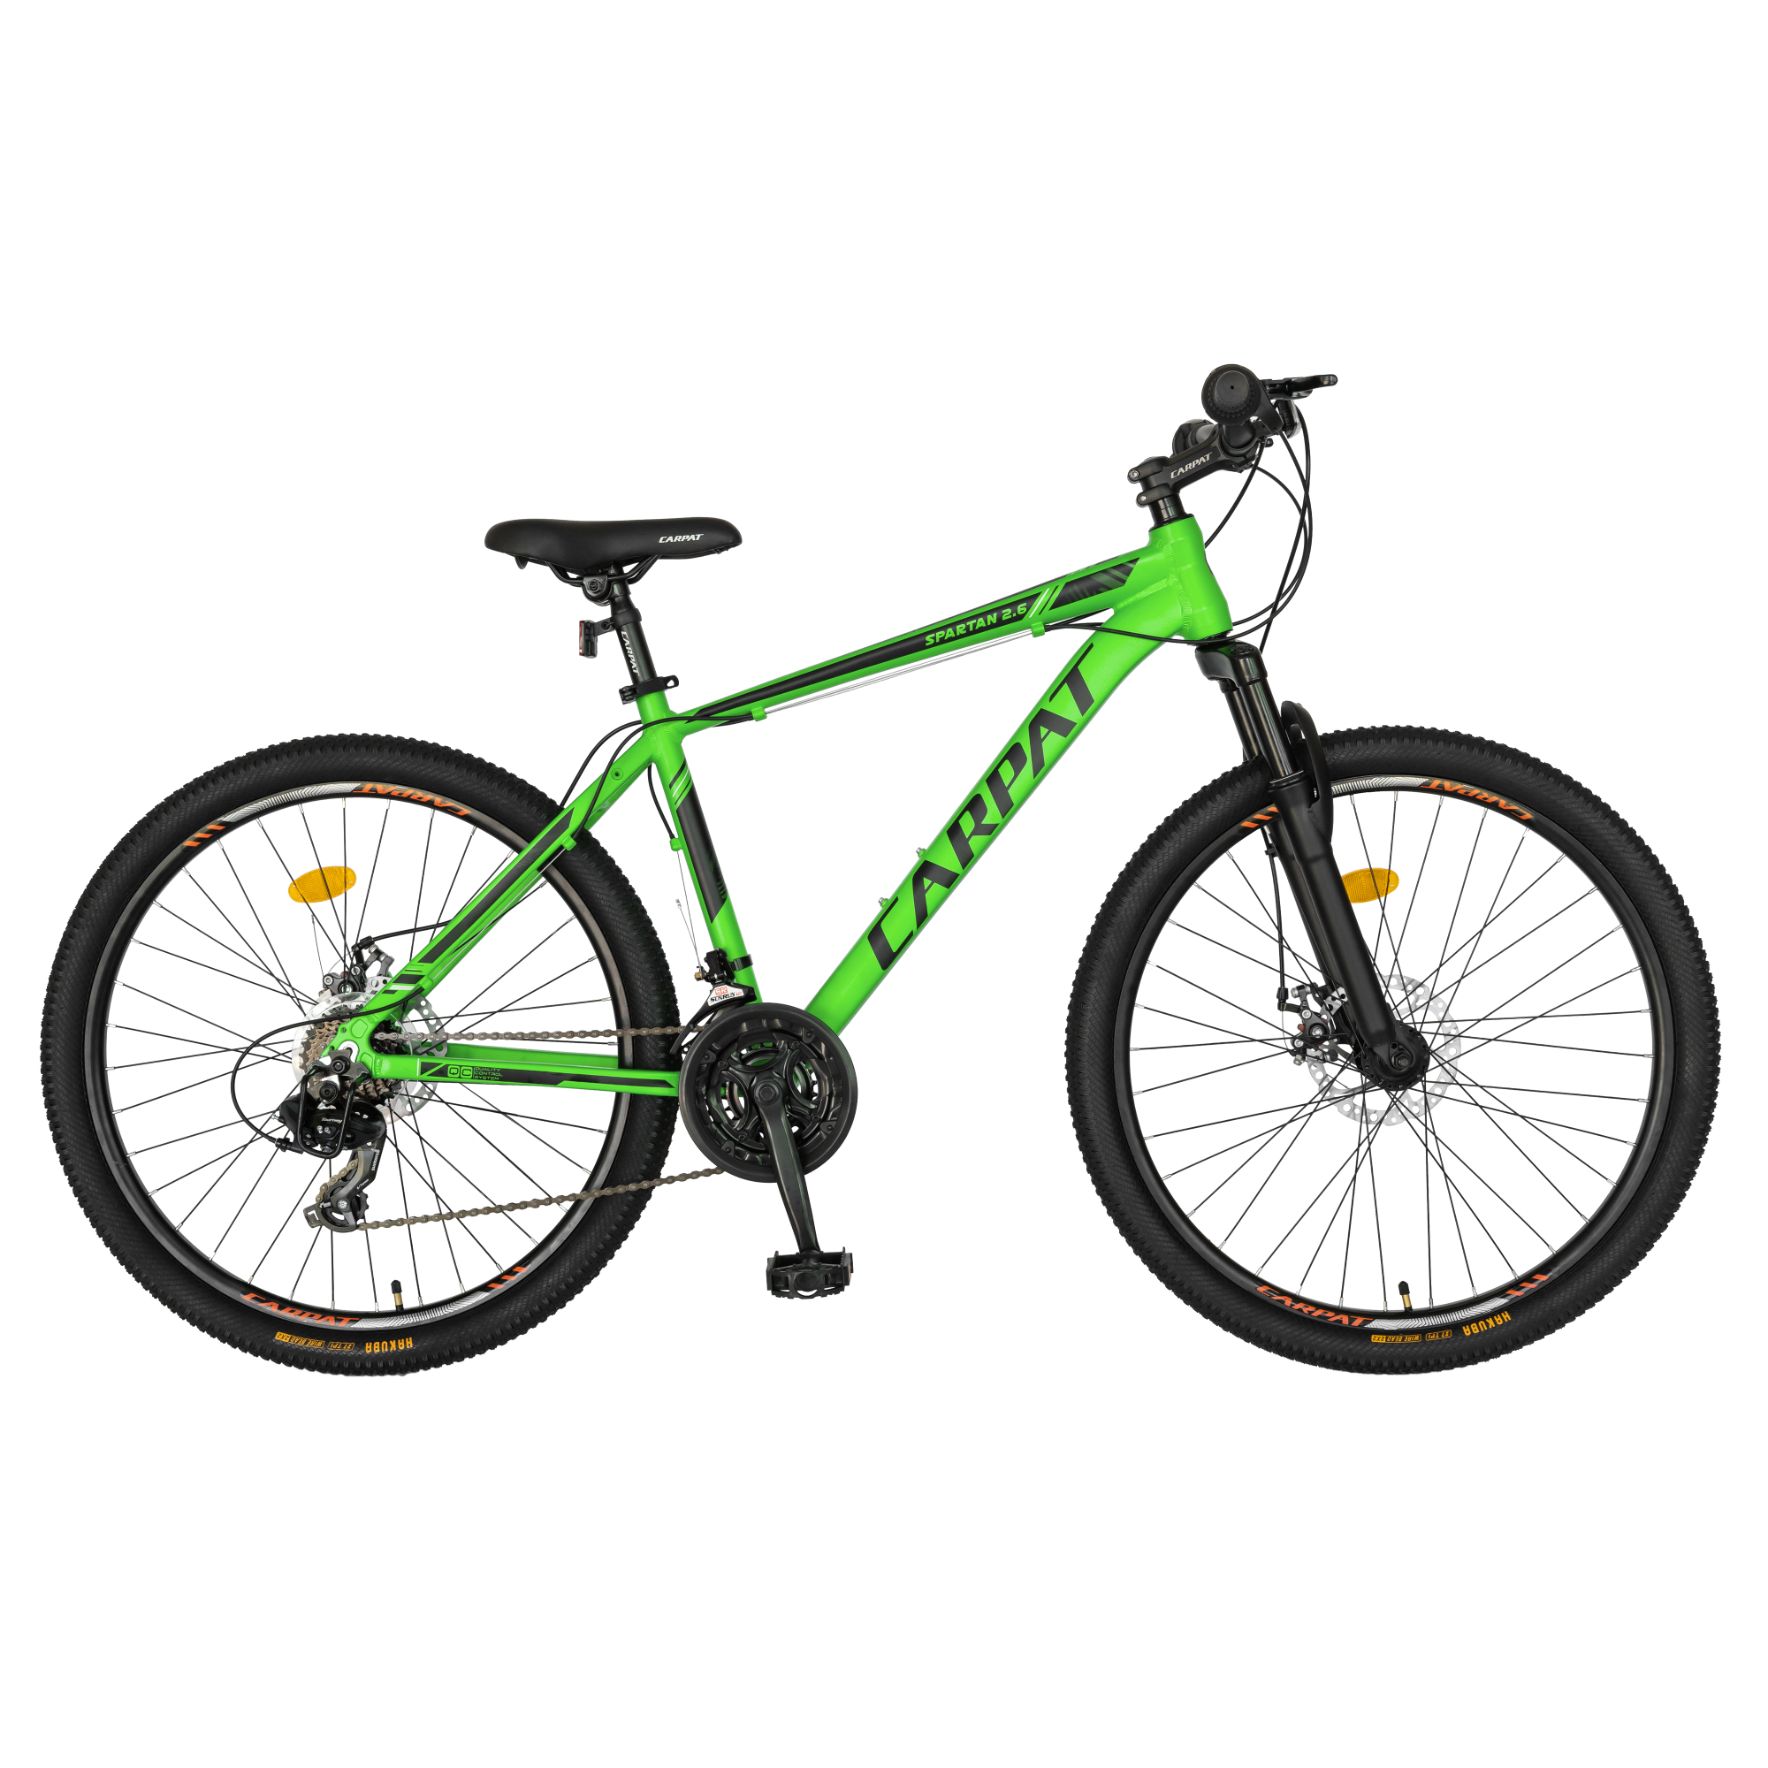 BICICLETE DE MUNTE - Bicicleta MTB-HT, 21 viteze, Roti 27.5 Inch, Cadru Aluminiu 6061, Frane pe Disc, Carpat C2758C, Verde cu Design Negru, https:carpatsport.ro